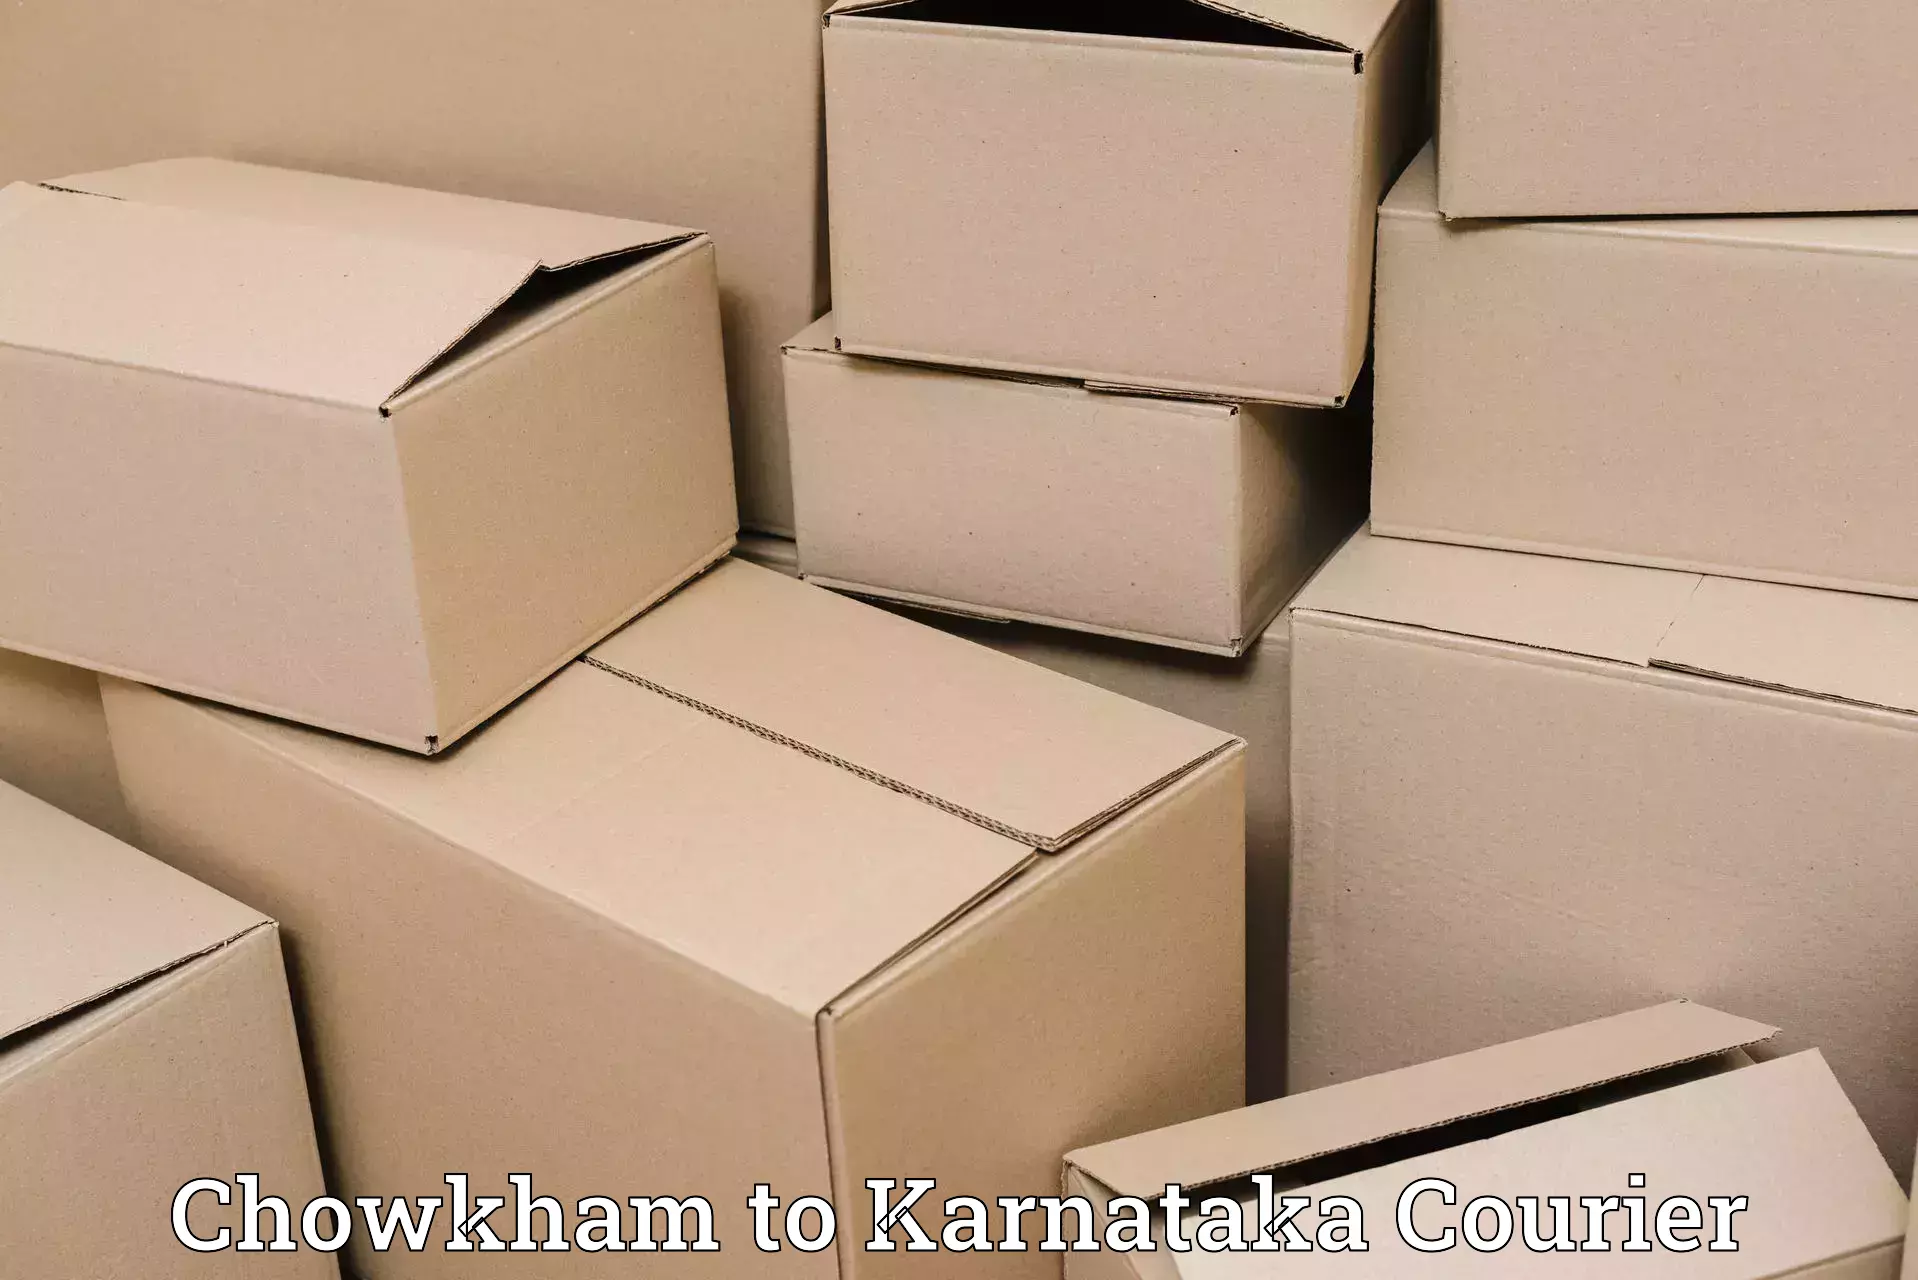 Baggage transport services Chowkham to Karnataka